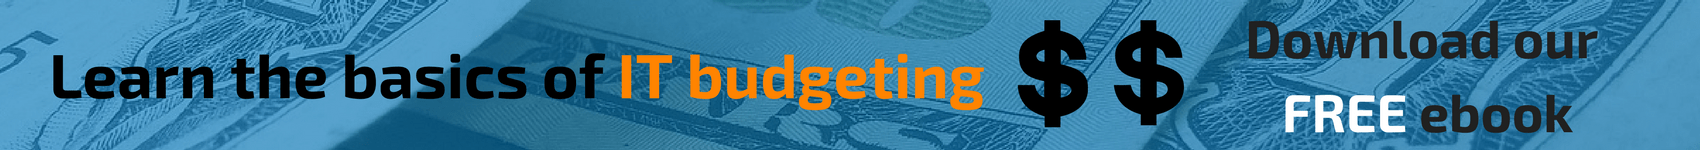 Budget Ebook banner CTA.png